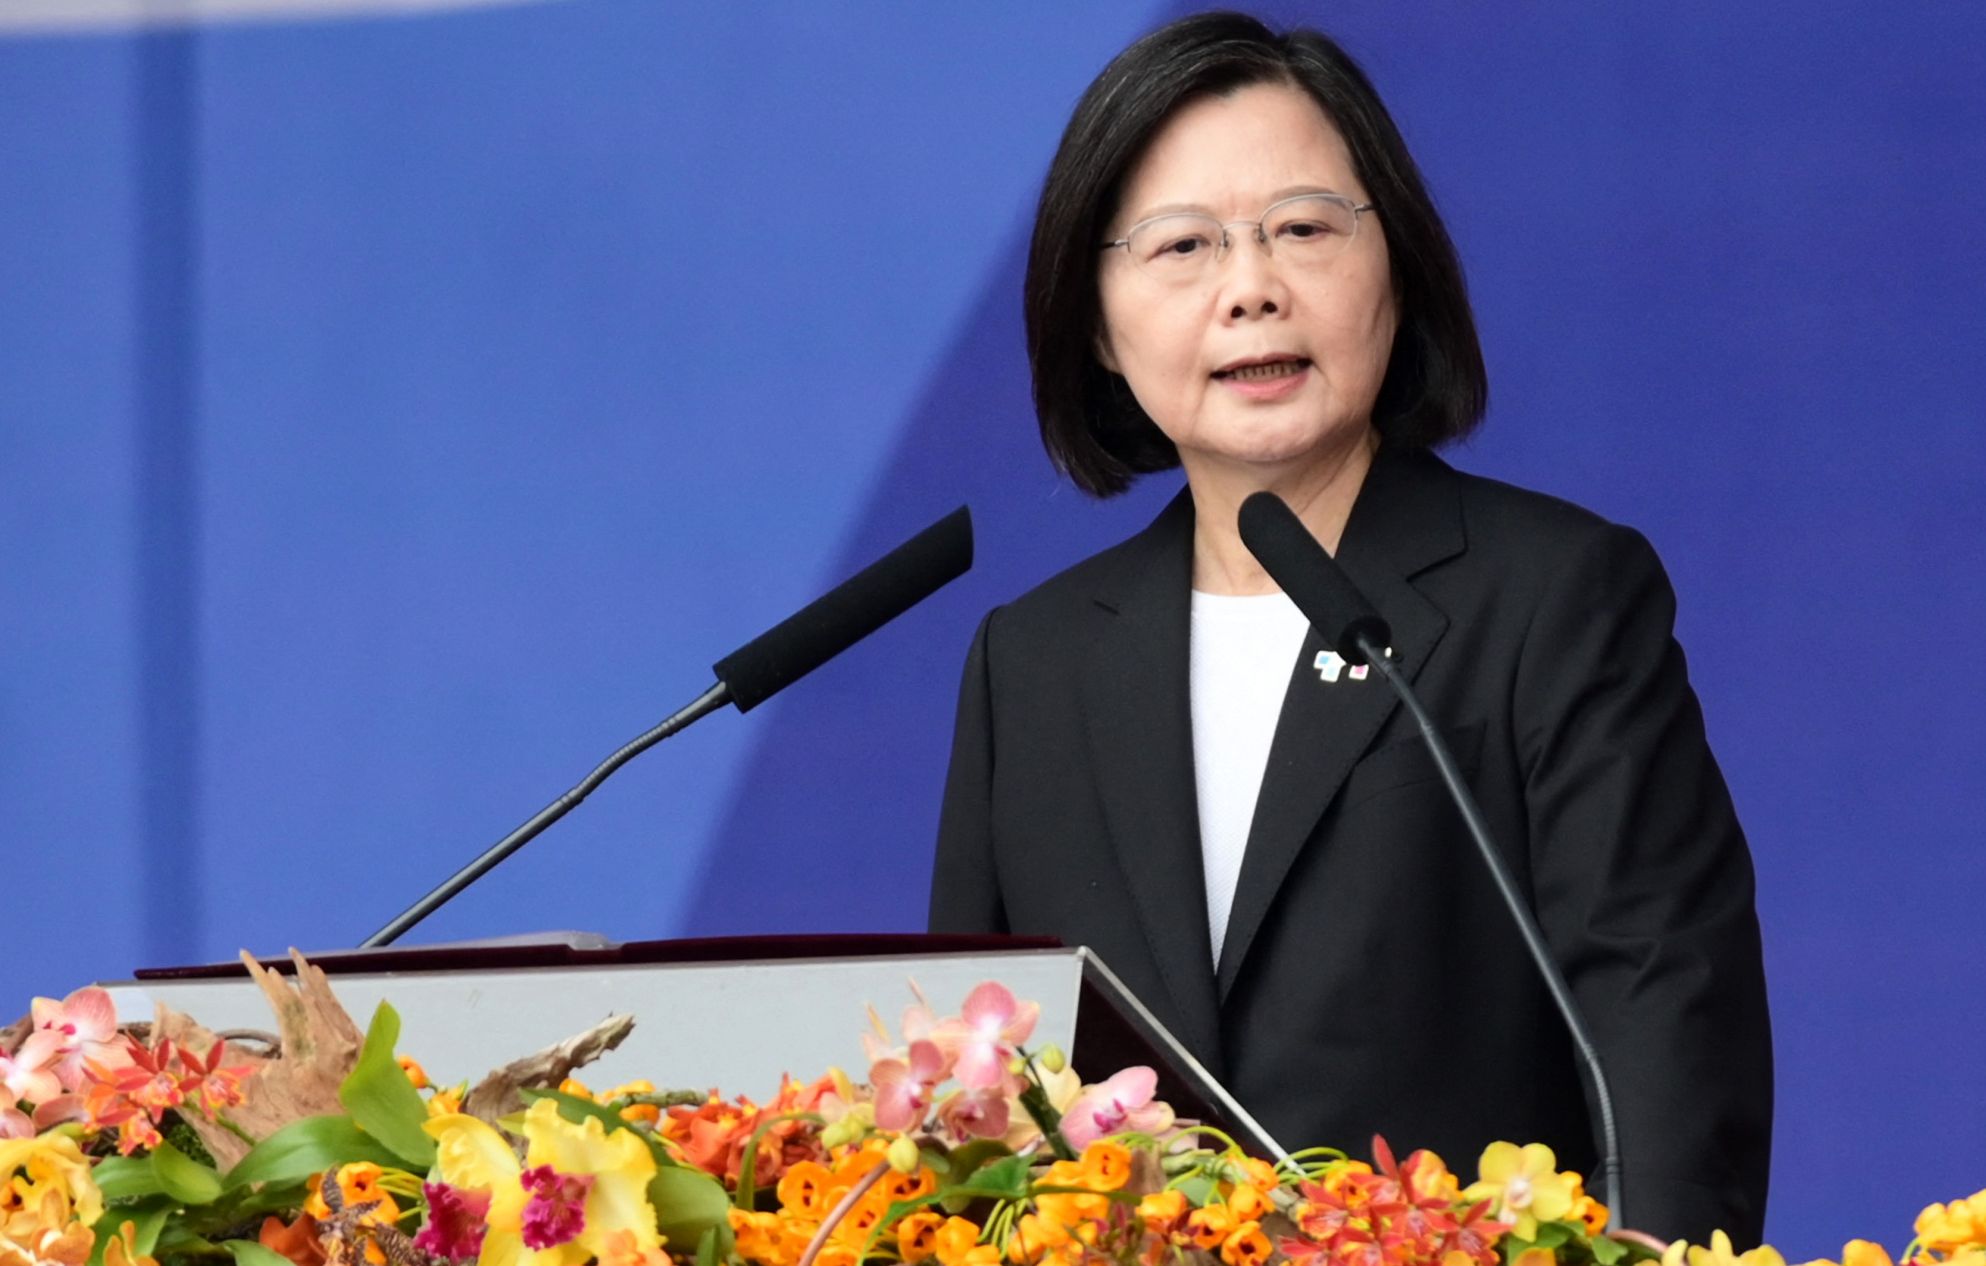 Preşedinta Taiwanului promite că insula va rămâne democratică vreme de generaţii - 1-1696926300.jpg